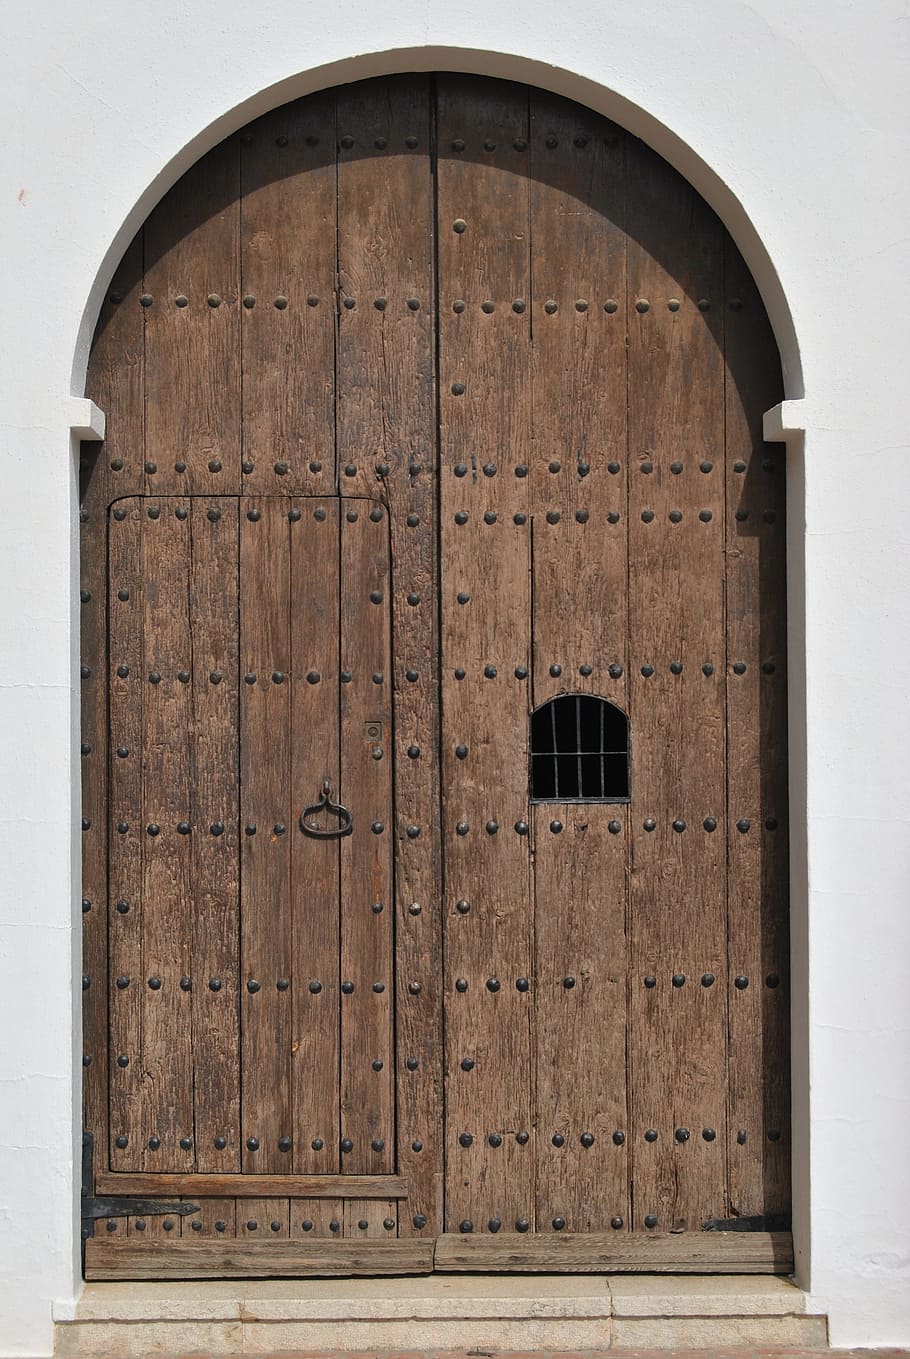 cerrado, marrón, de madera, puerta, meta, puerta de madera, entrada, entrada de la casa, puerta vieja, madera